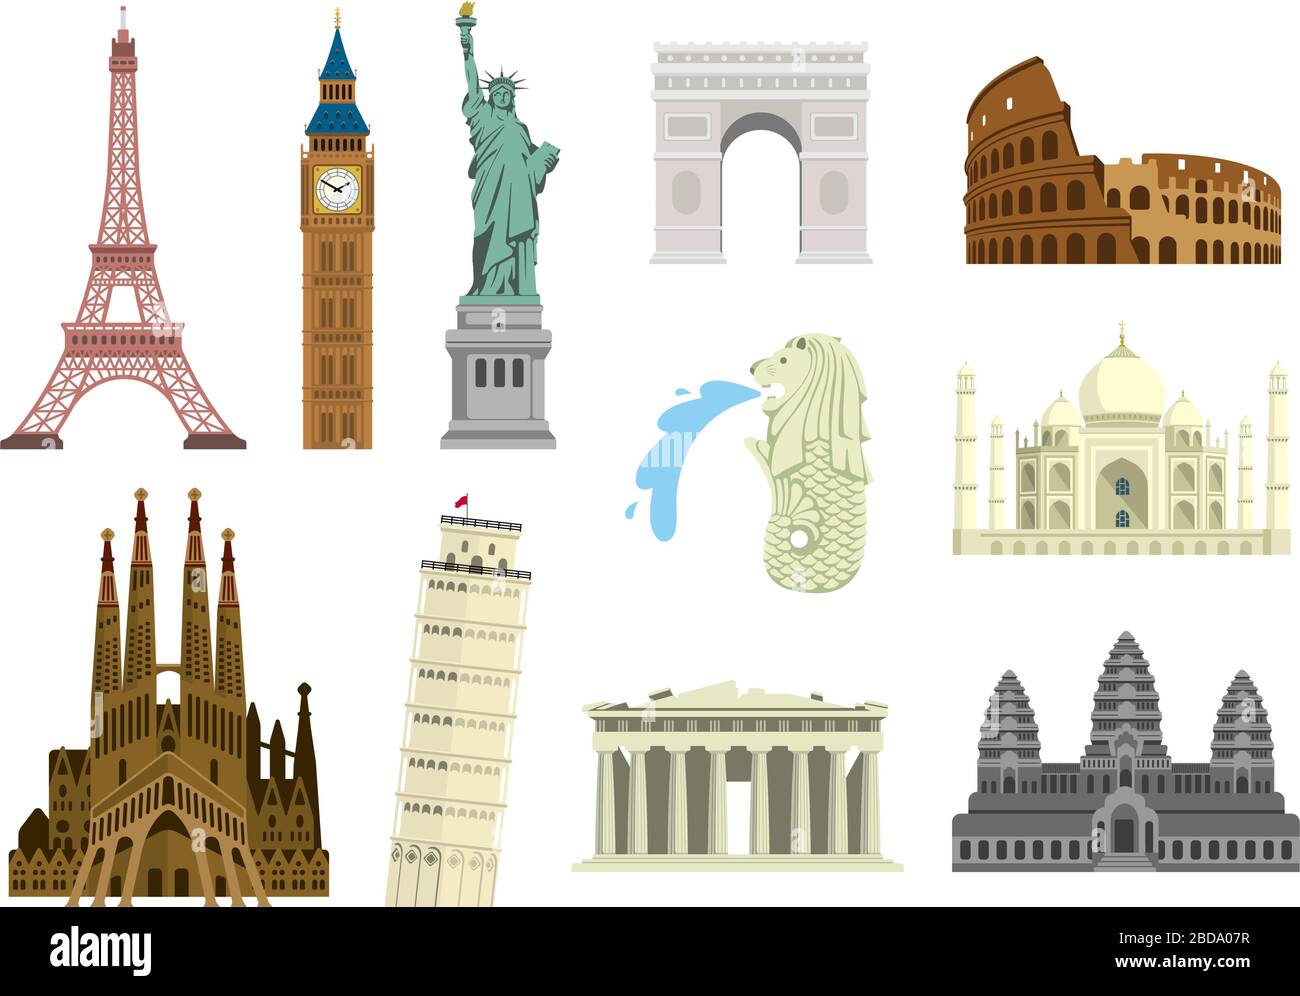 Bâtiments de renommée mondiale illustration vectorielle ( patrimoine mondial ) / Statue de la liberté, Tour Eiffel, Sagrada Familia etc Illustration de Vecteur